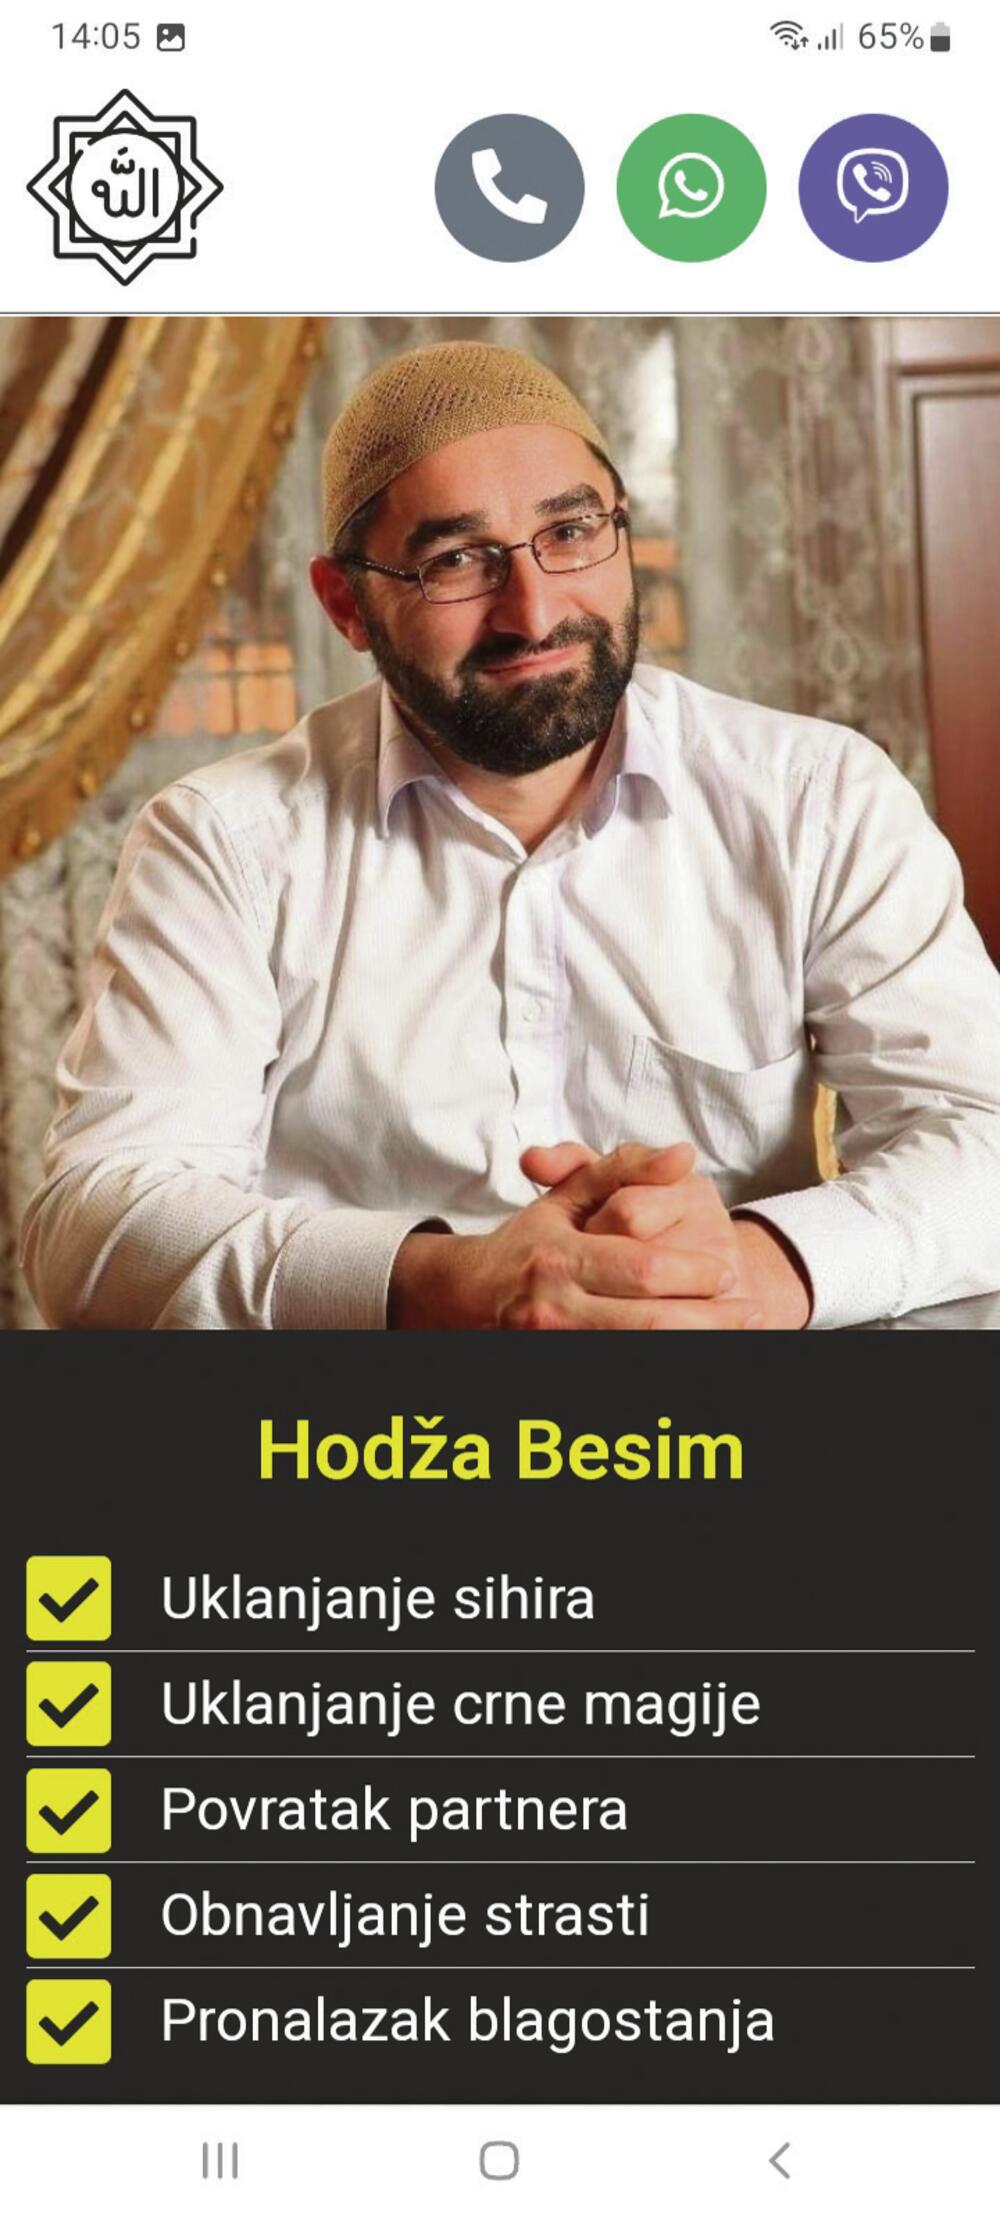 Hodža Besim ima svoju internet stranicu